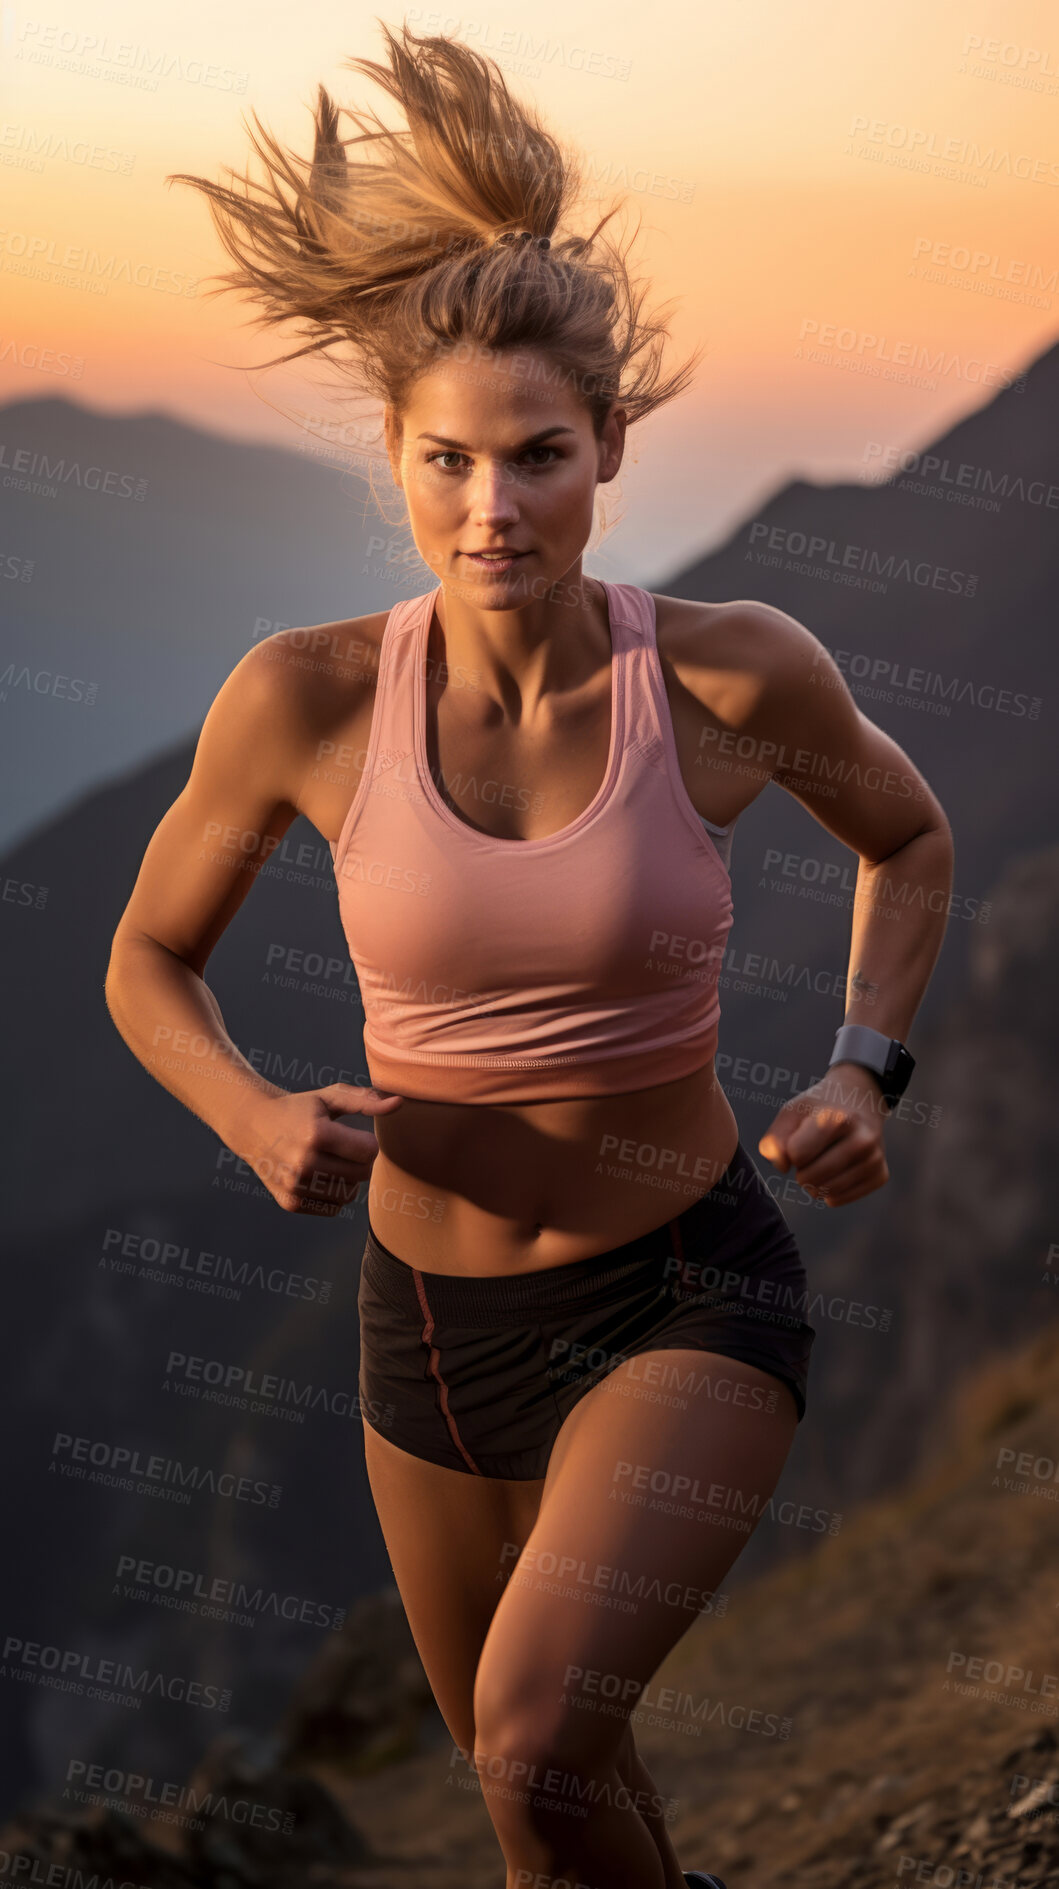 Buy stock photo Contrast shot of trail runner on mountain in sunset.
Fitness, sport, runner Concept.